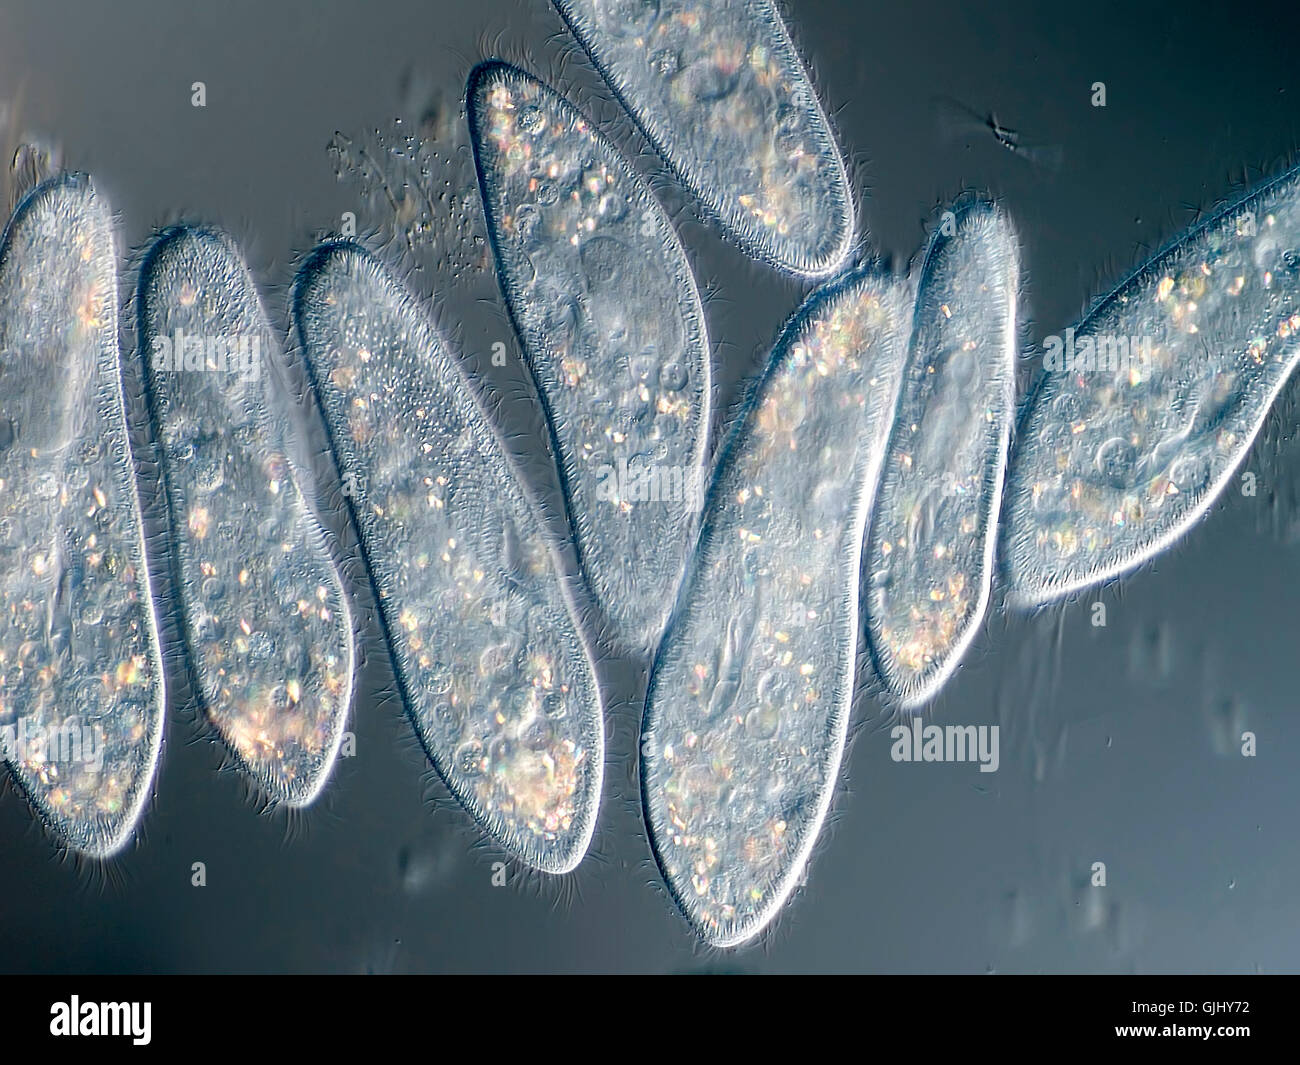 paramecium under the microscope Stock Photo